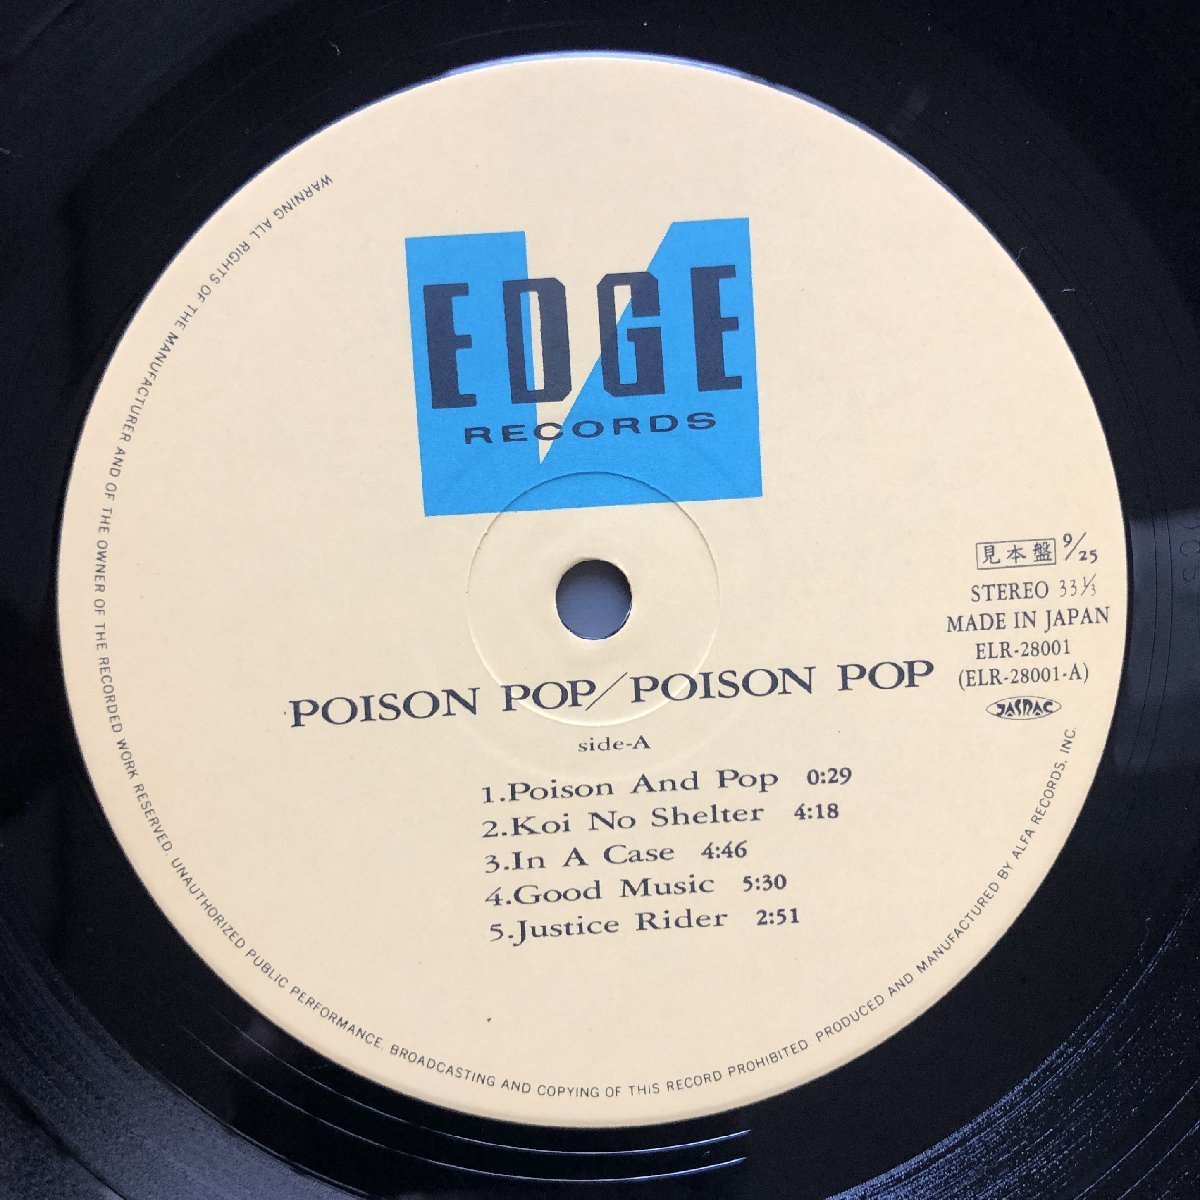 傷なし美盤 良ジャケ レア盤 プロモ盤 1985年 国内盤 オリジナルリリース盤 ポイズン・ポップ Poison Pop LPレコード S/T 帯付 J-Rock_画像8